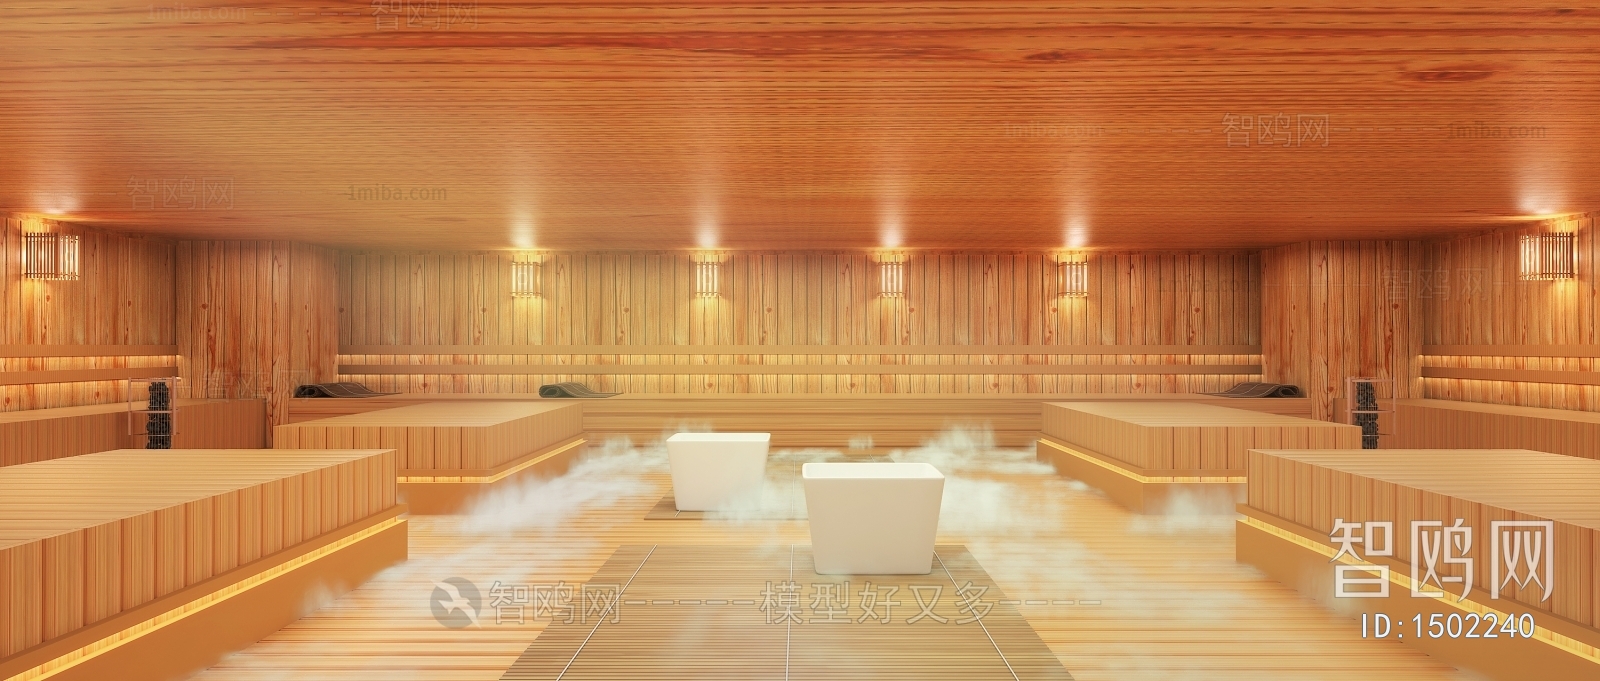 现代洗浴中心